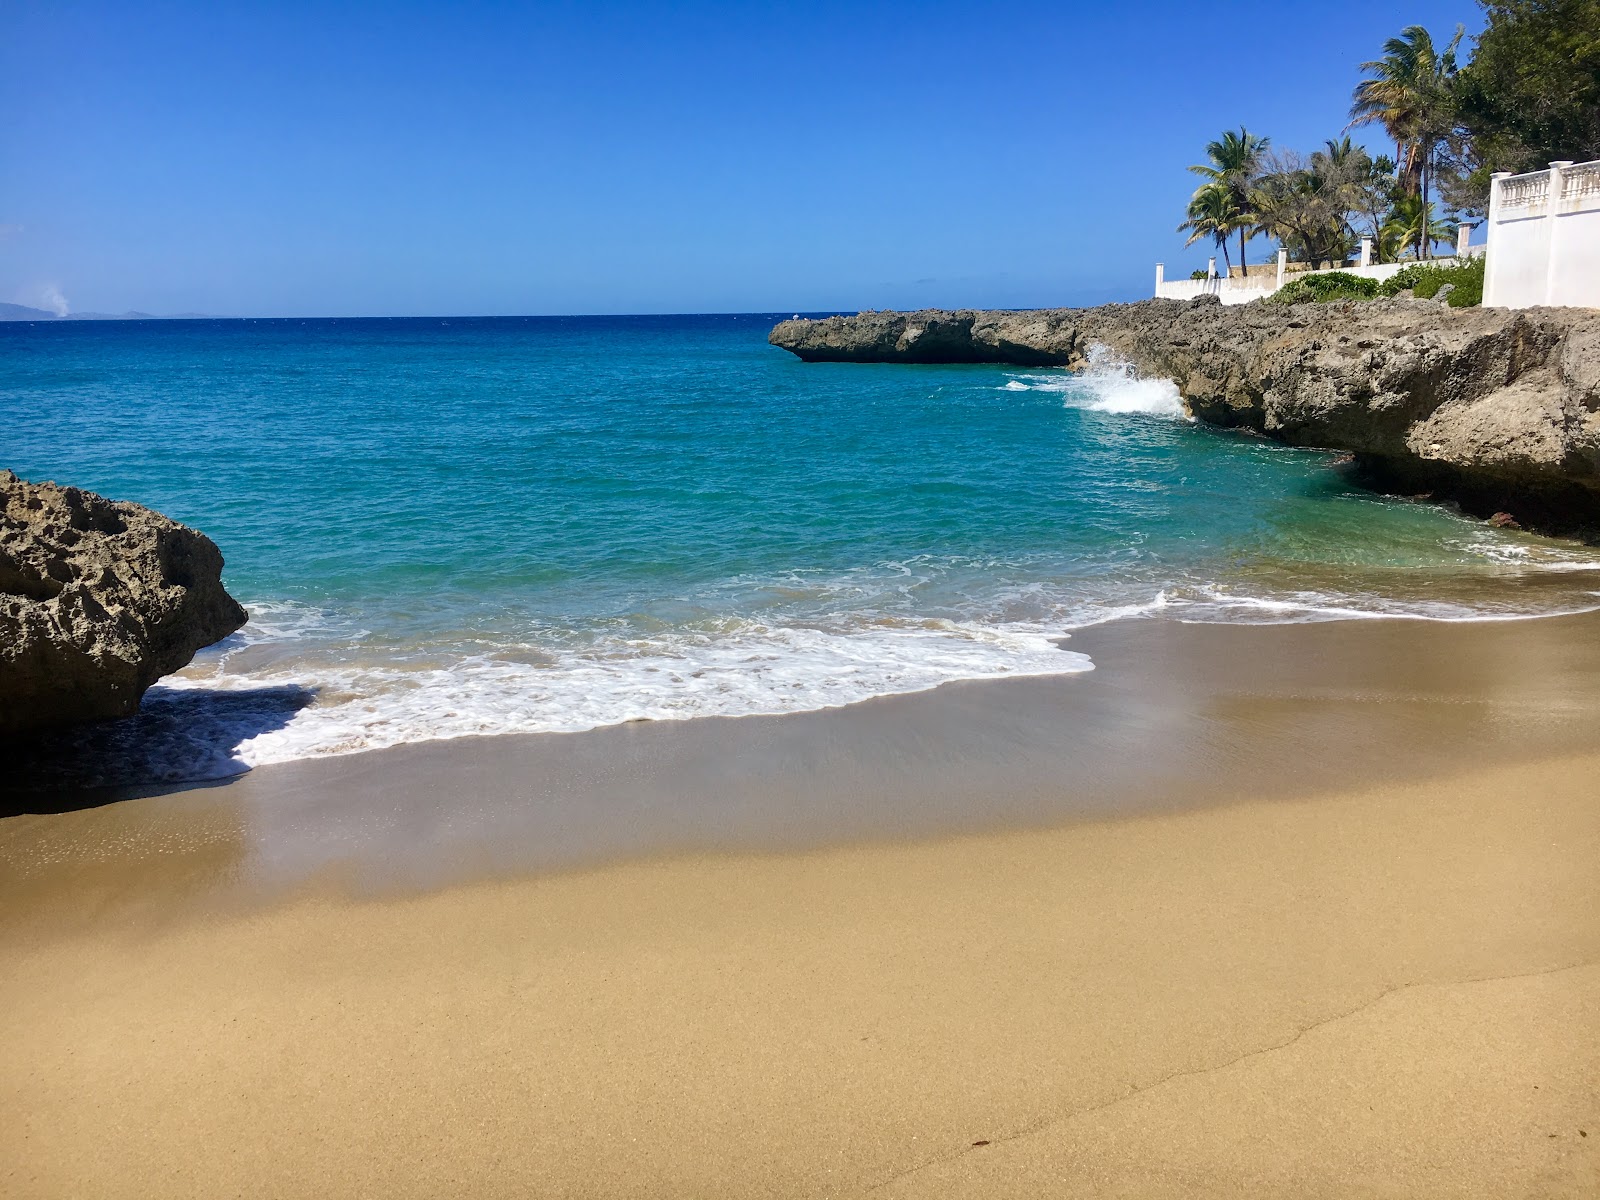 Playa Chiquita'in fotoğrafı parlak ince kum yüzey ile